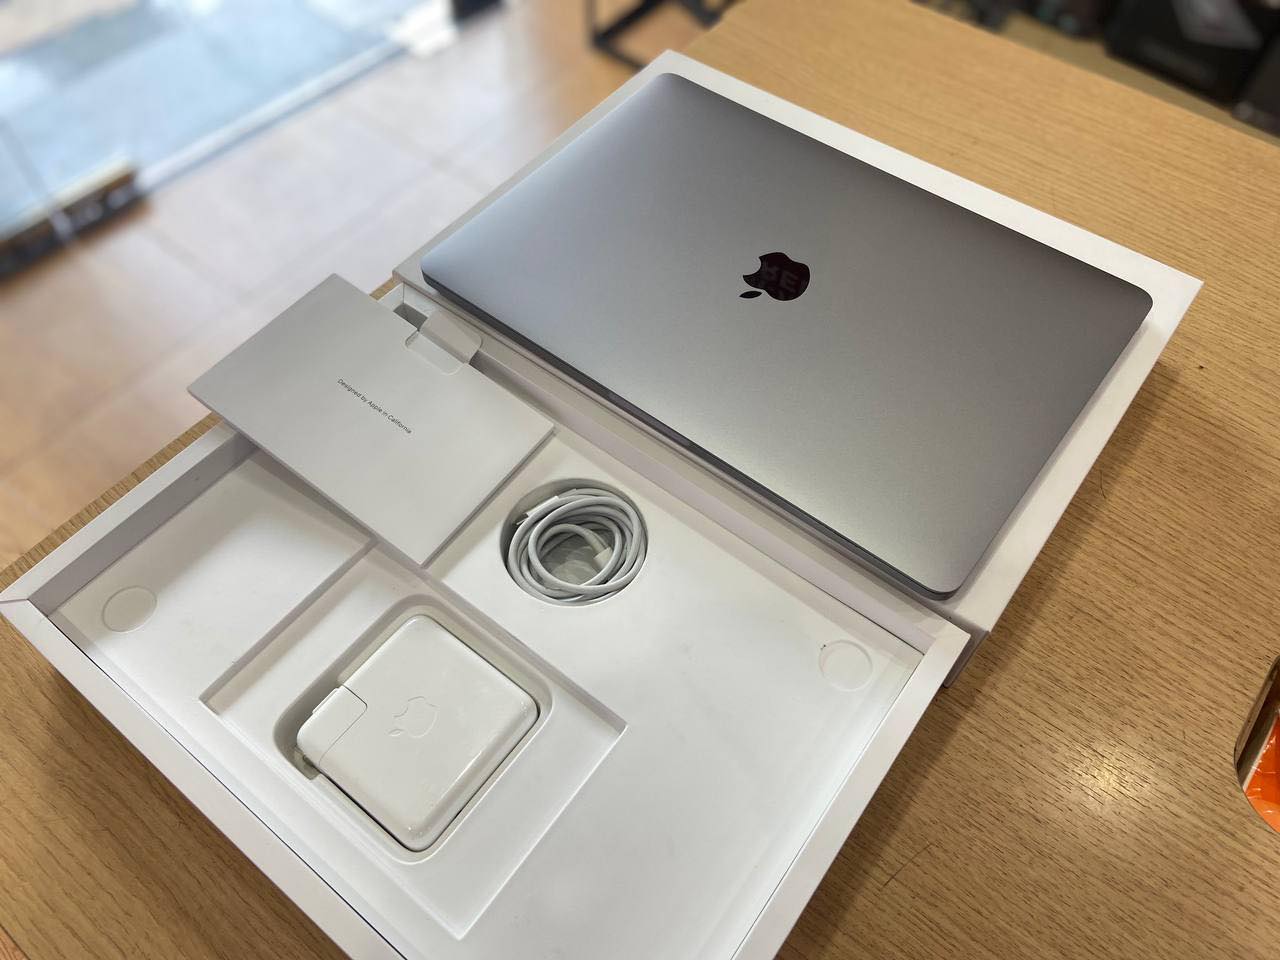 Macbook Pro 2020 13 inch